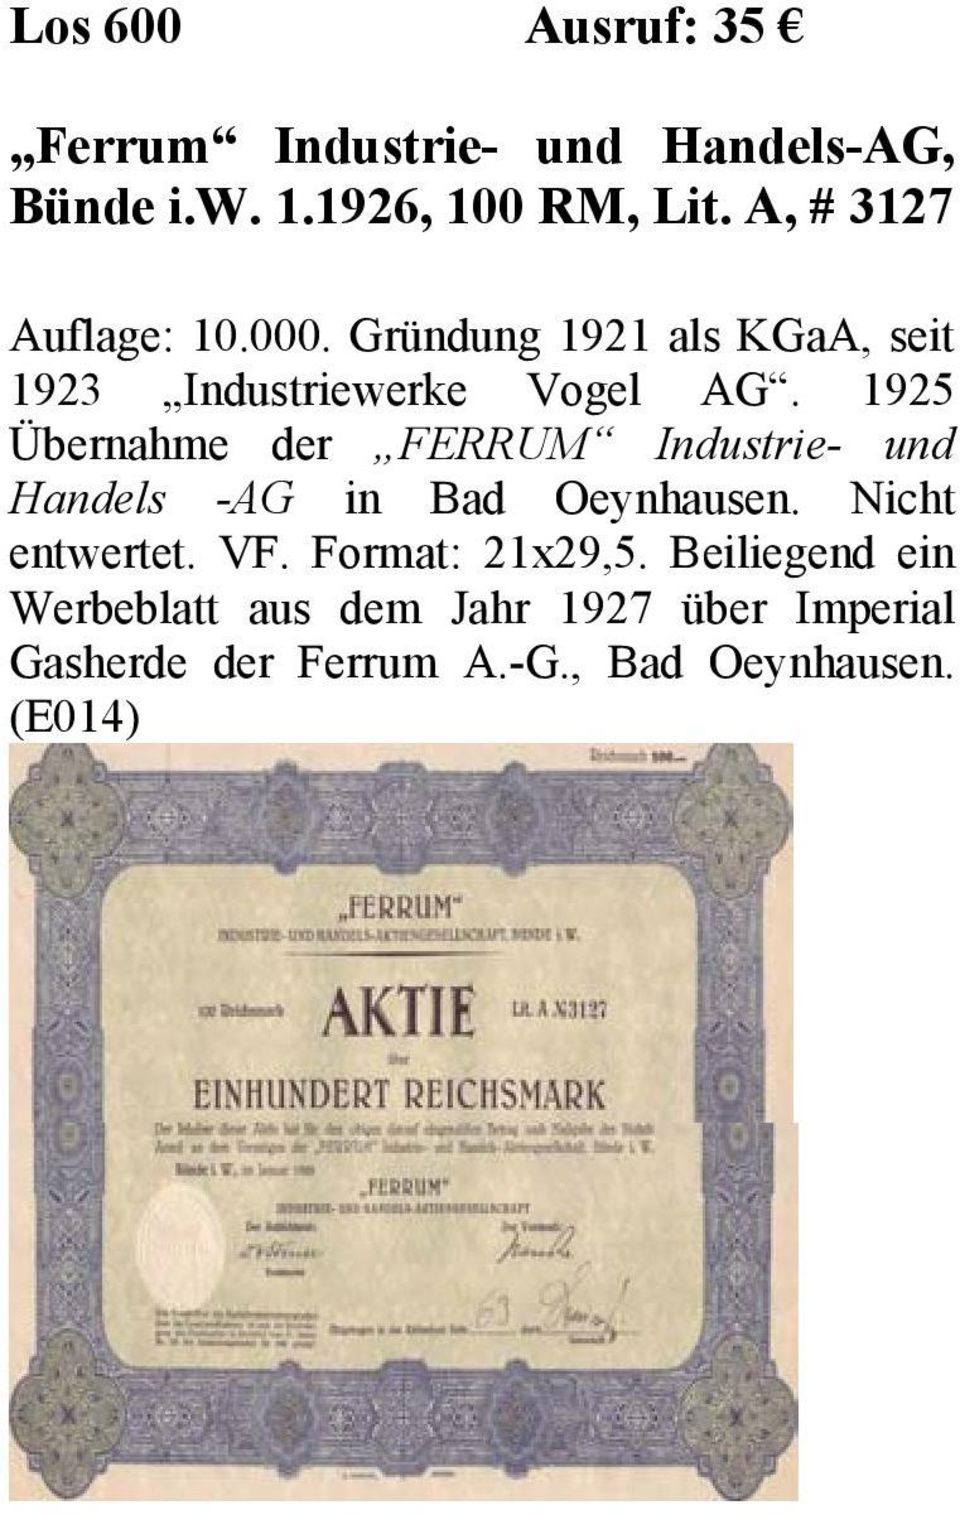 1925 Übernahme der FERRUM Industrie- und Handels -AG in Bad Oeynhausen. Nicht entwertet. VF.